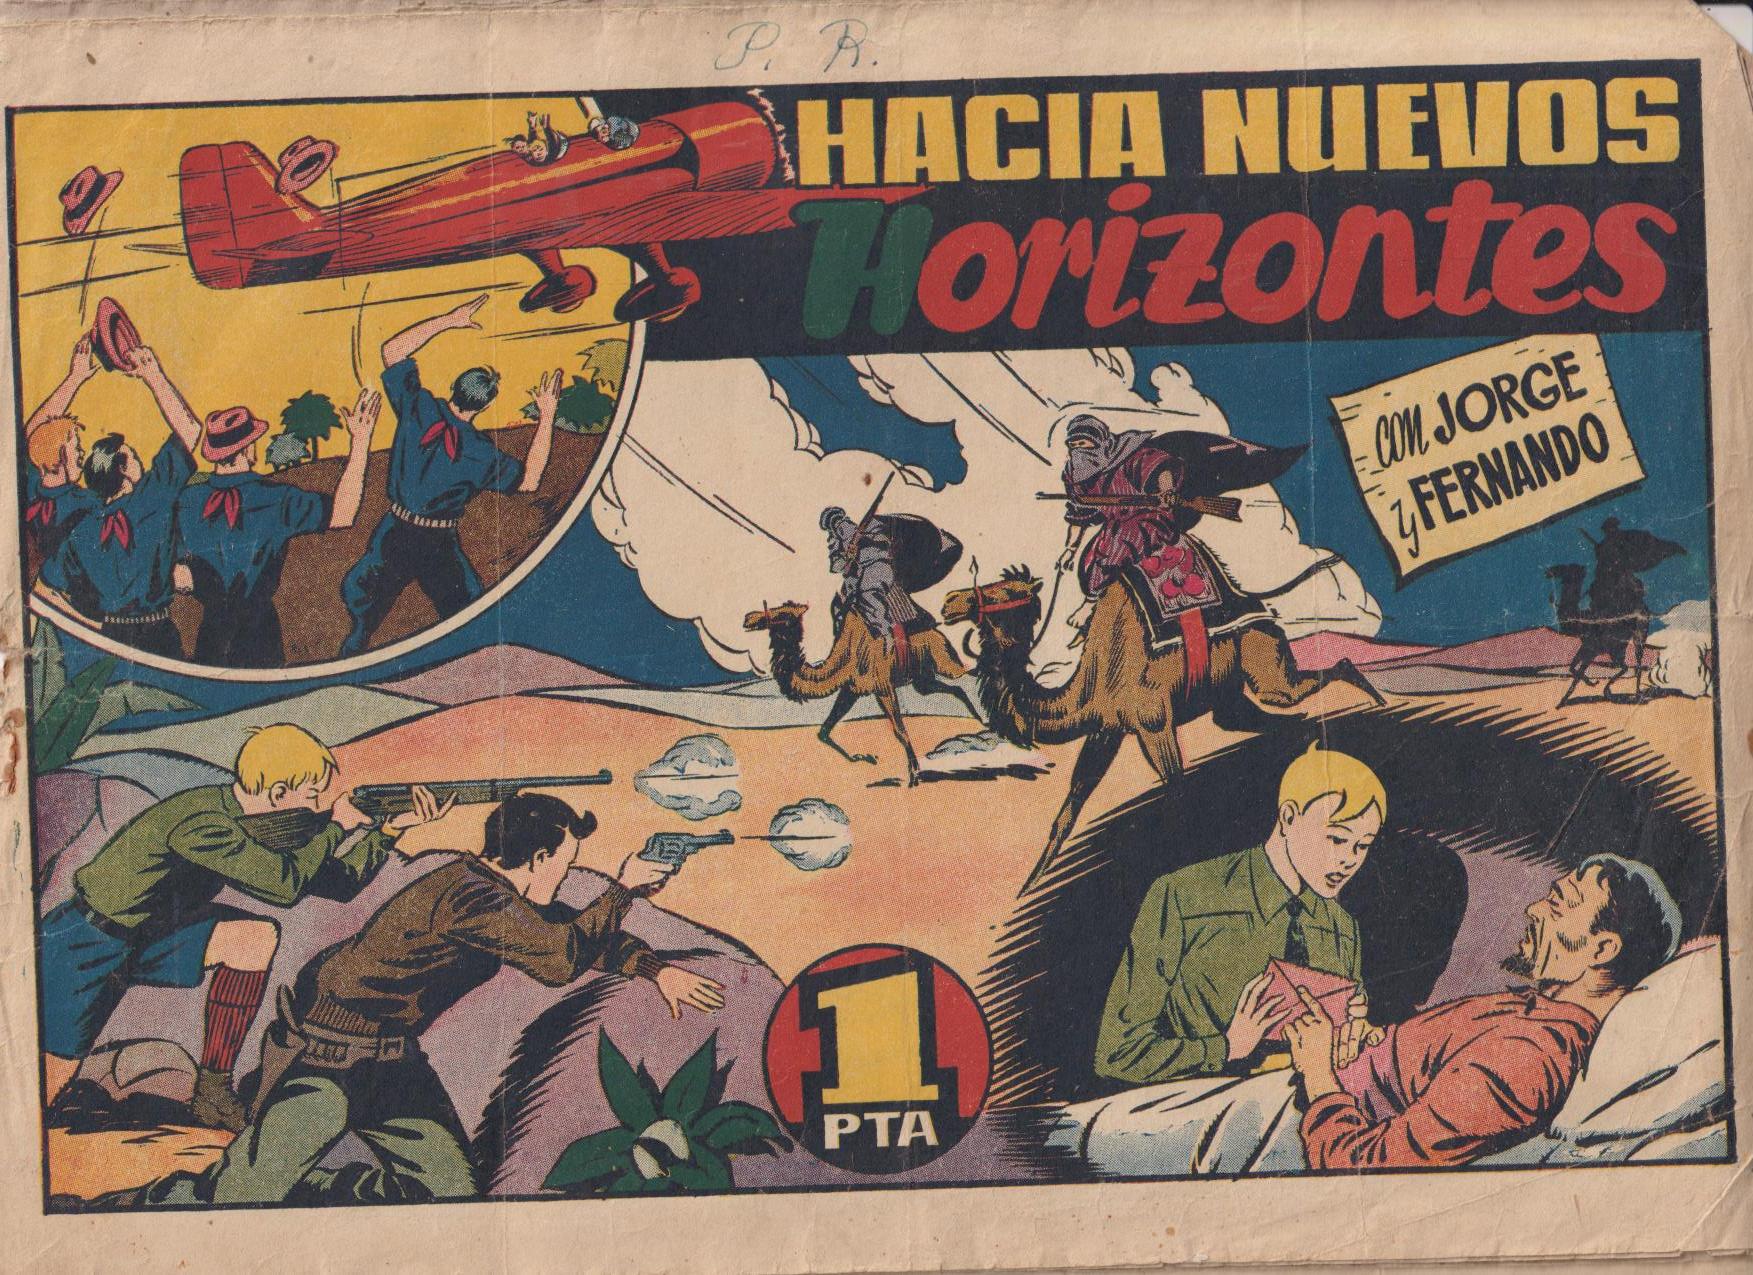 Jorge y Fernando. Hacia Nuevos Horizontes. Hispano Americana 1943